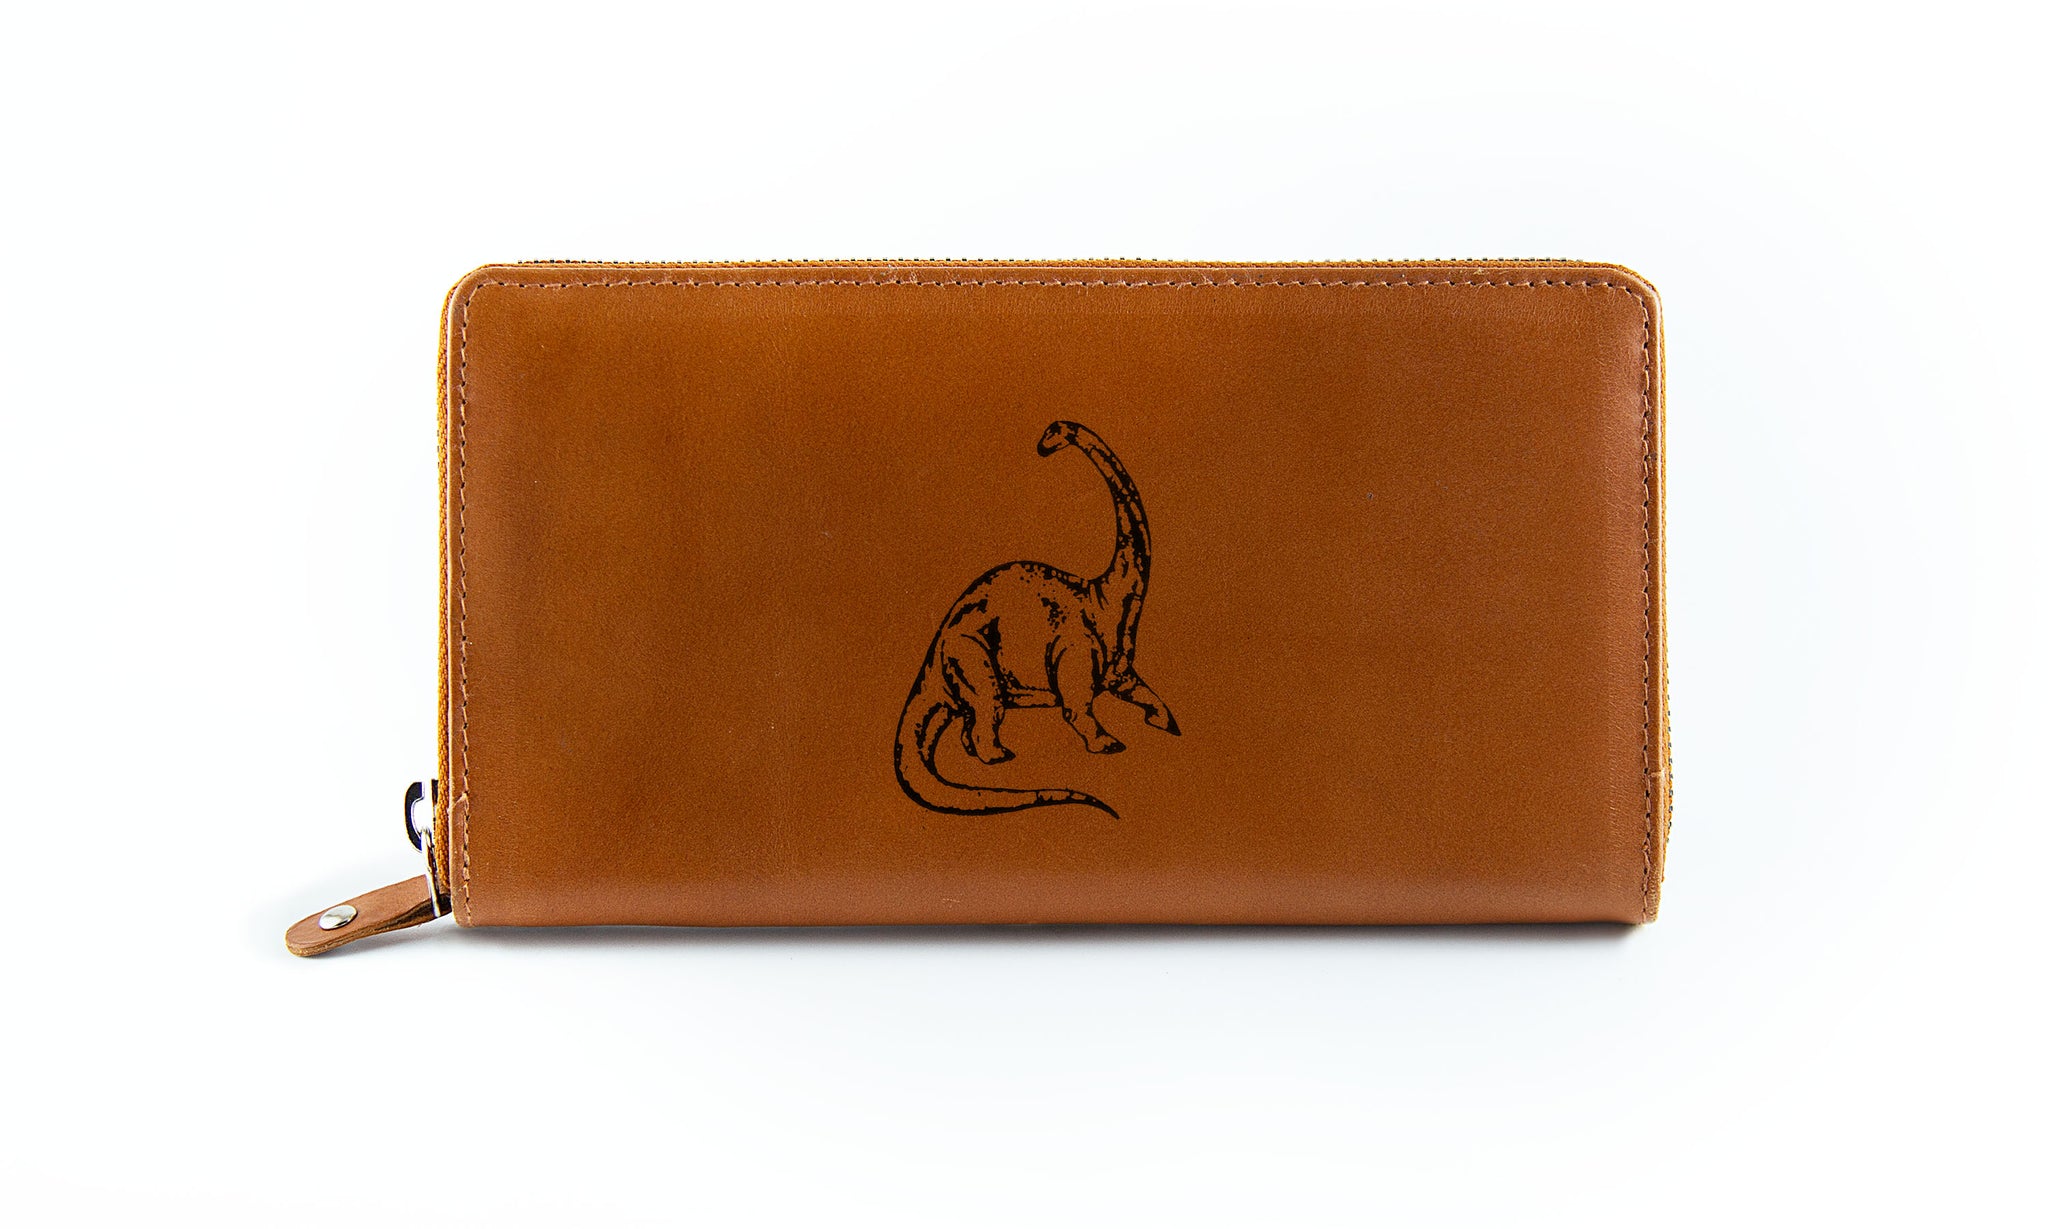 Custom Kangaroo Clutch Wallet